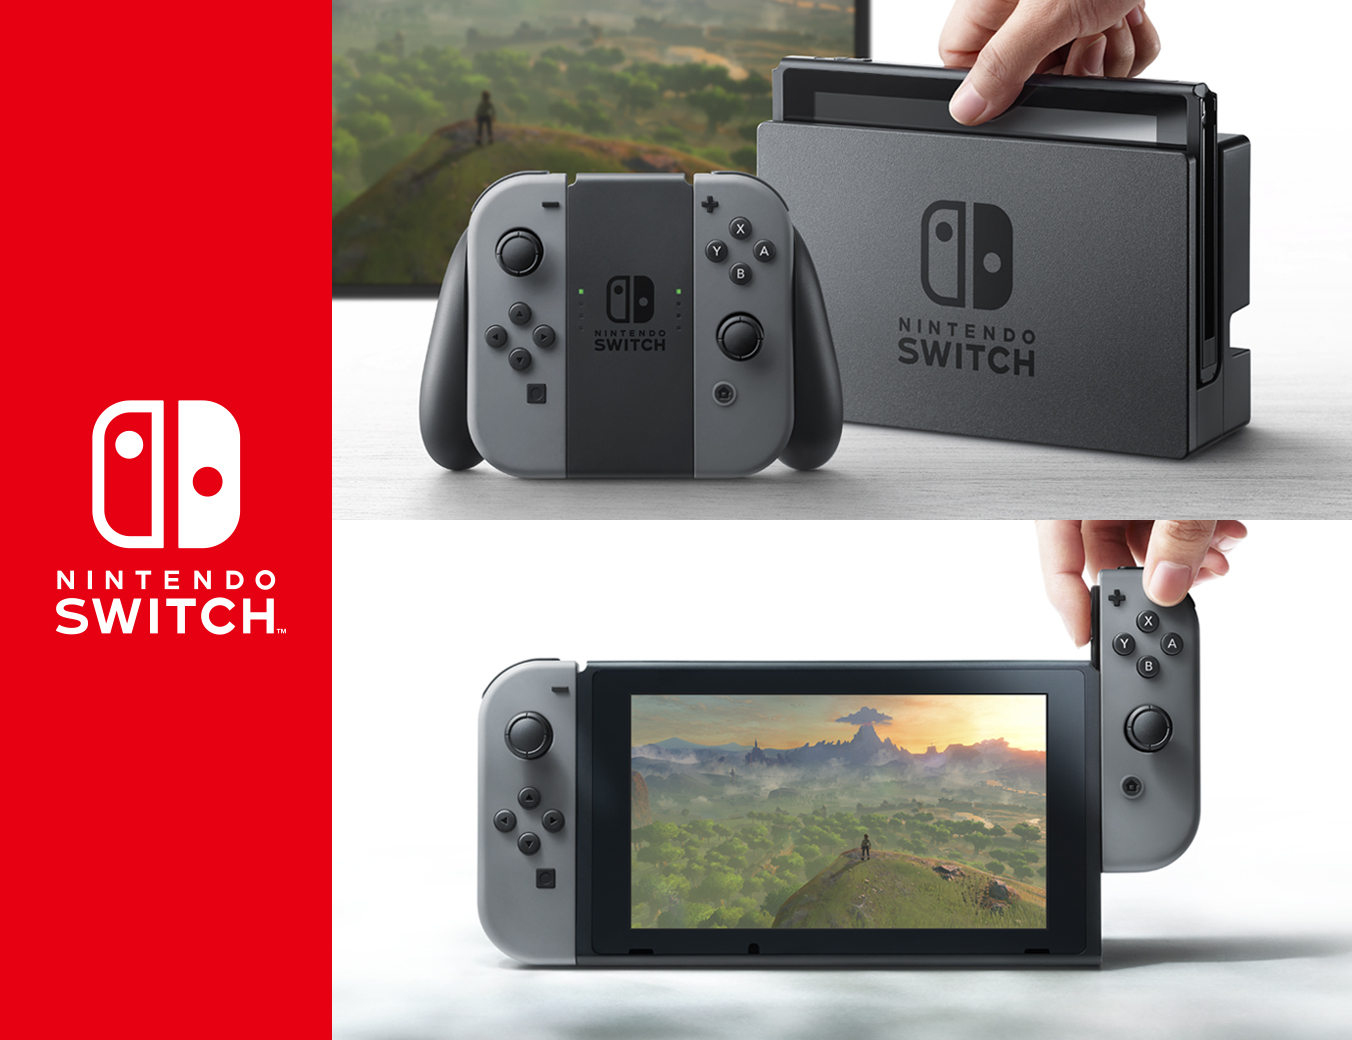 Nintendo Switch, il servizio online posticipato al 2018. Ecco prezzo e dettagli